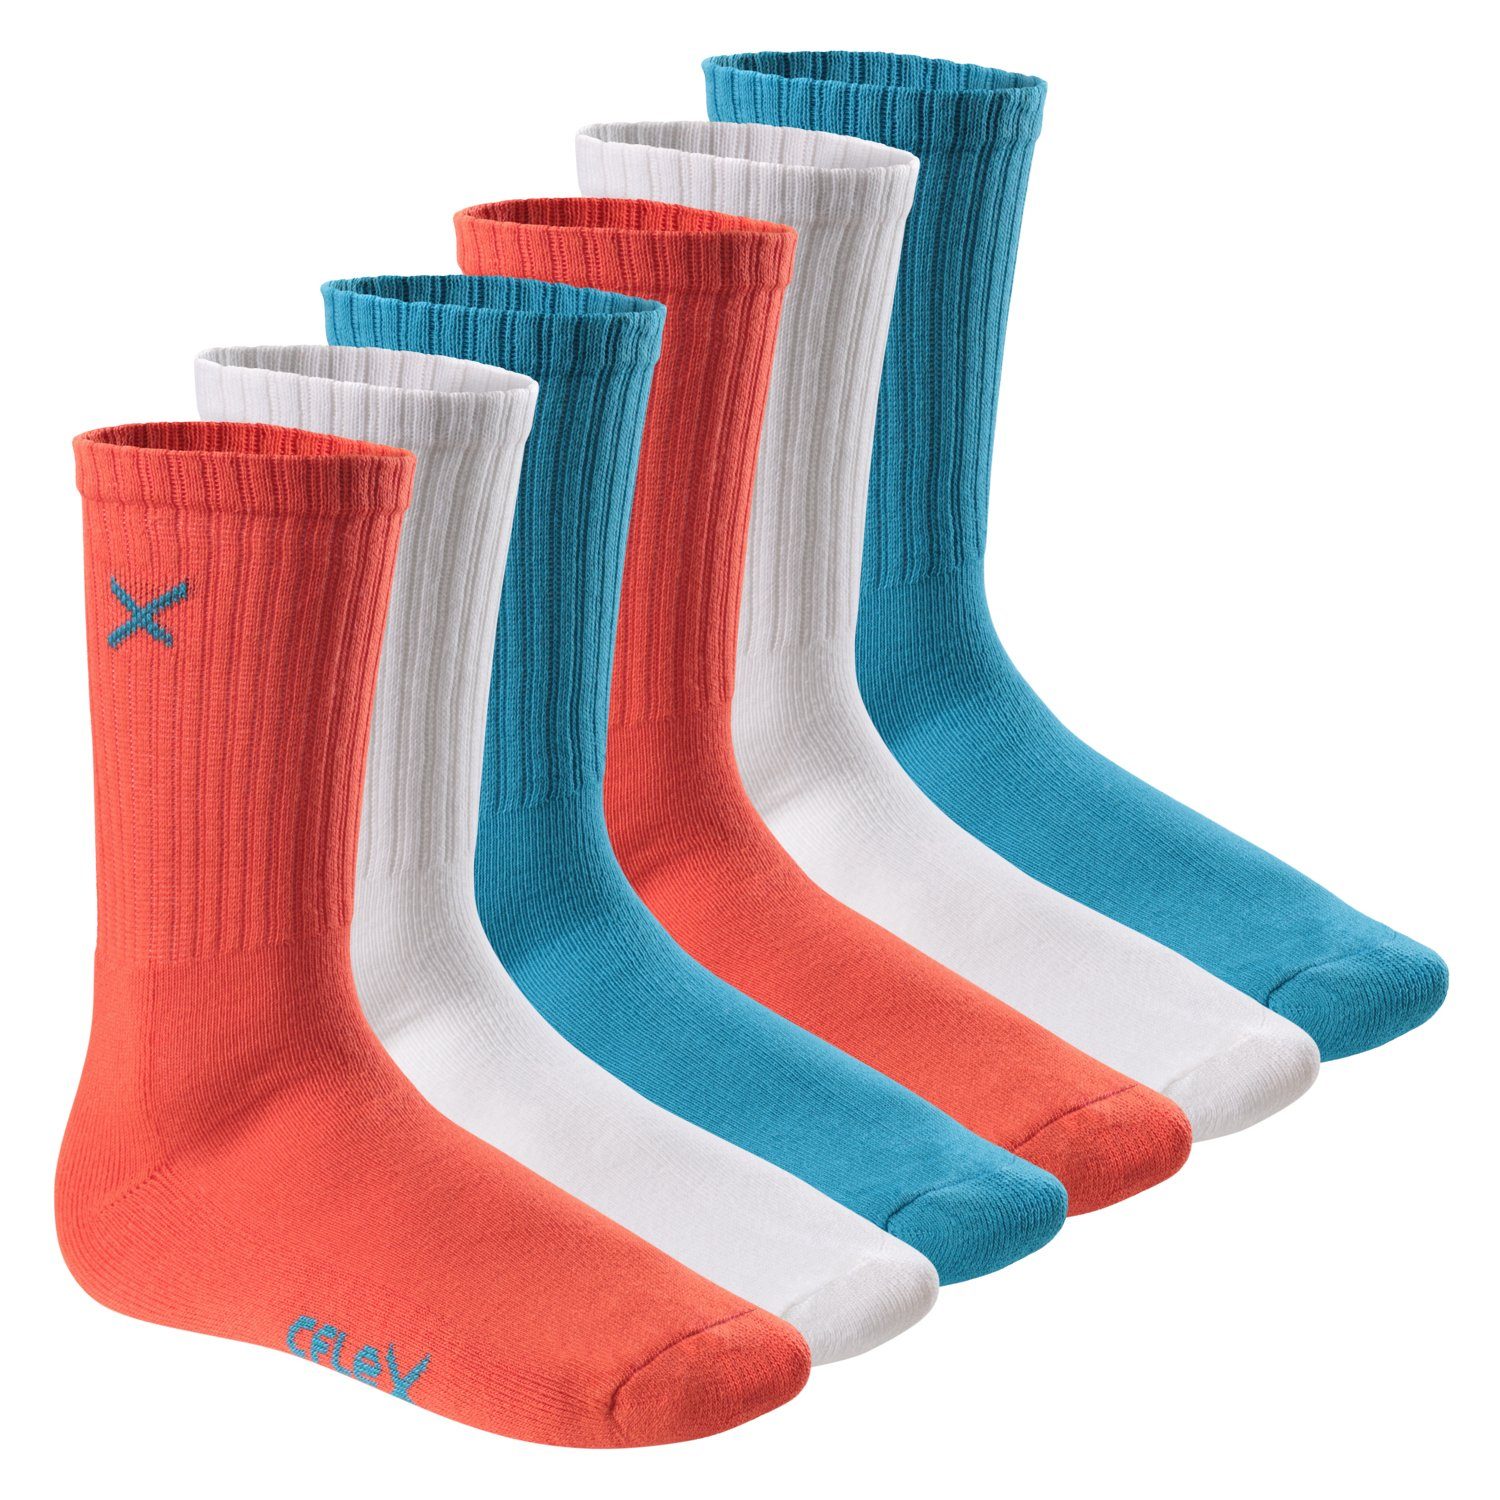 CFLEX Sportsocken Lifestyle Crew Socks (6 Paar) für Damen & Herren mit Frotteesohle Blue Coral Mix | Sportsocken